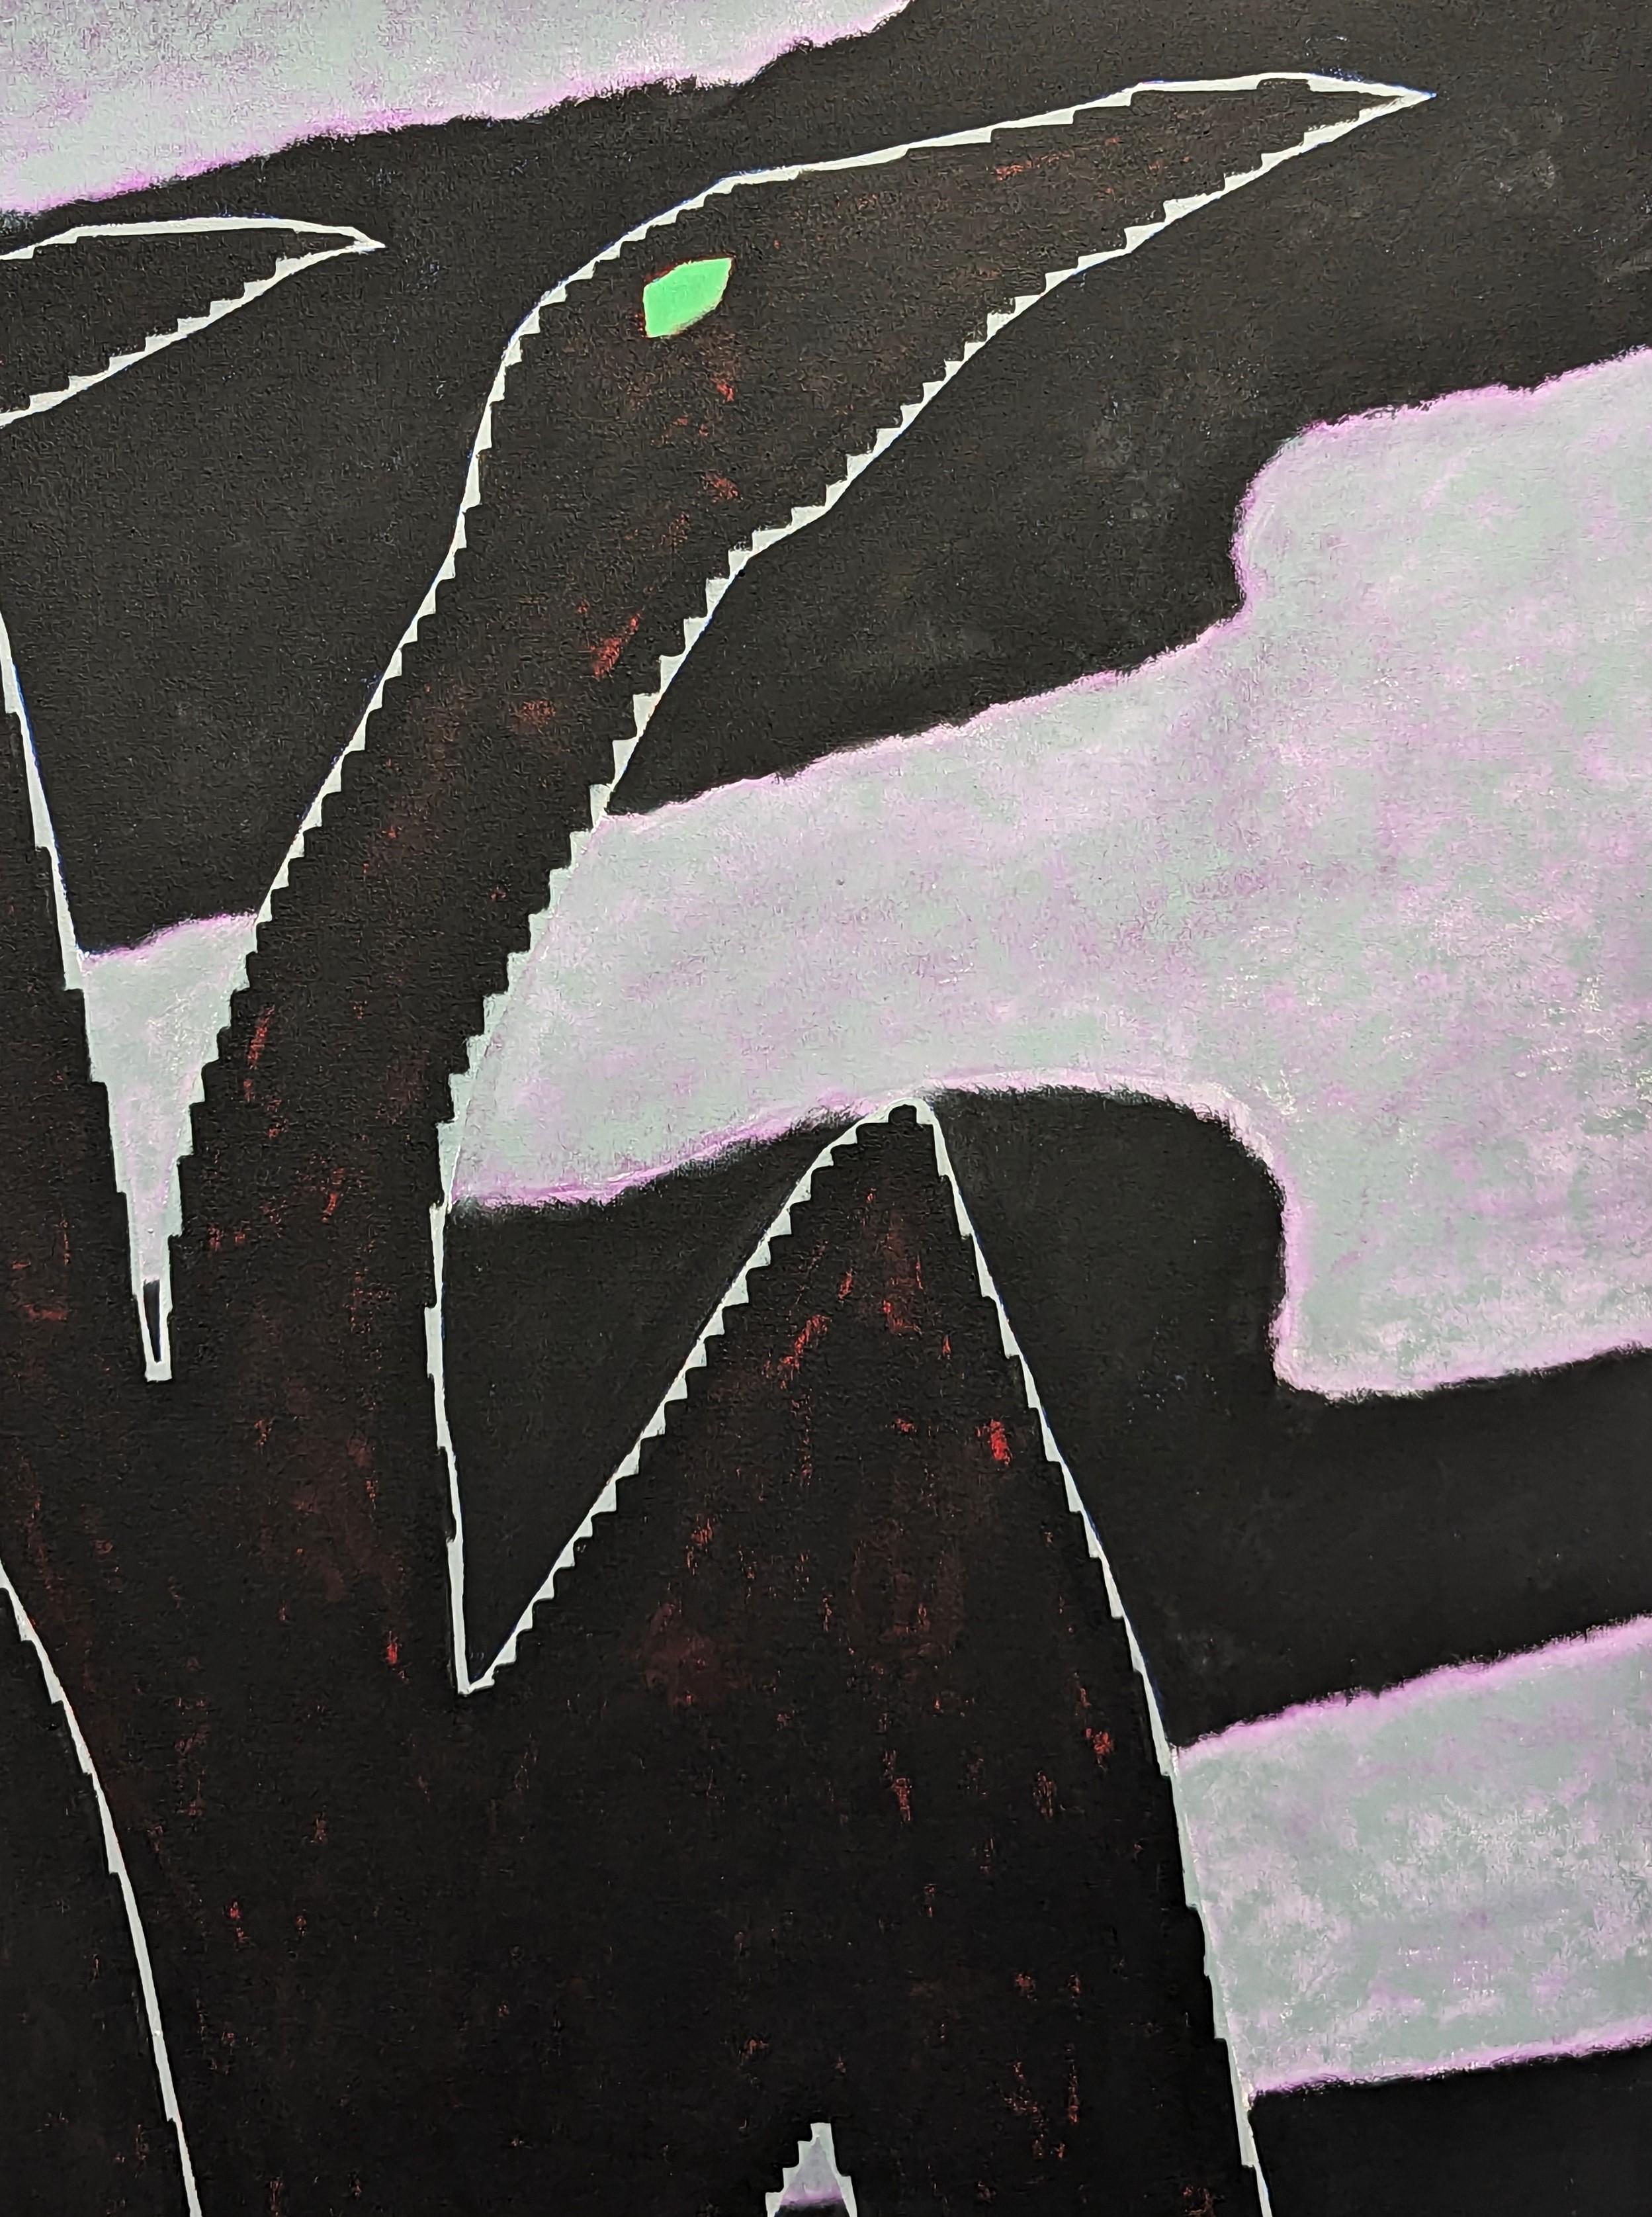 Peinture abstraite contemporaine de l'artiste local de Houston Emmanuel Araujo. L'œuvre représente un couple d'oiseaux aux yeux verts volant au-dessus d'une eau aux tons violets et noirs. Signé, titré et daté au verso. Actuellement non encadré, mais